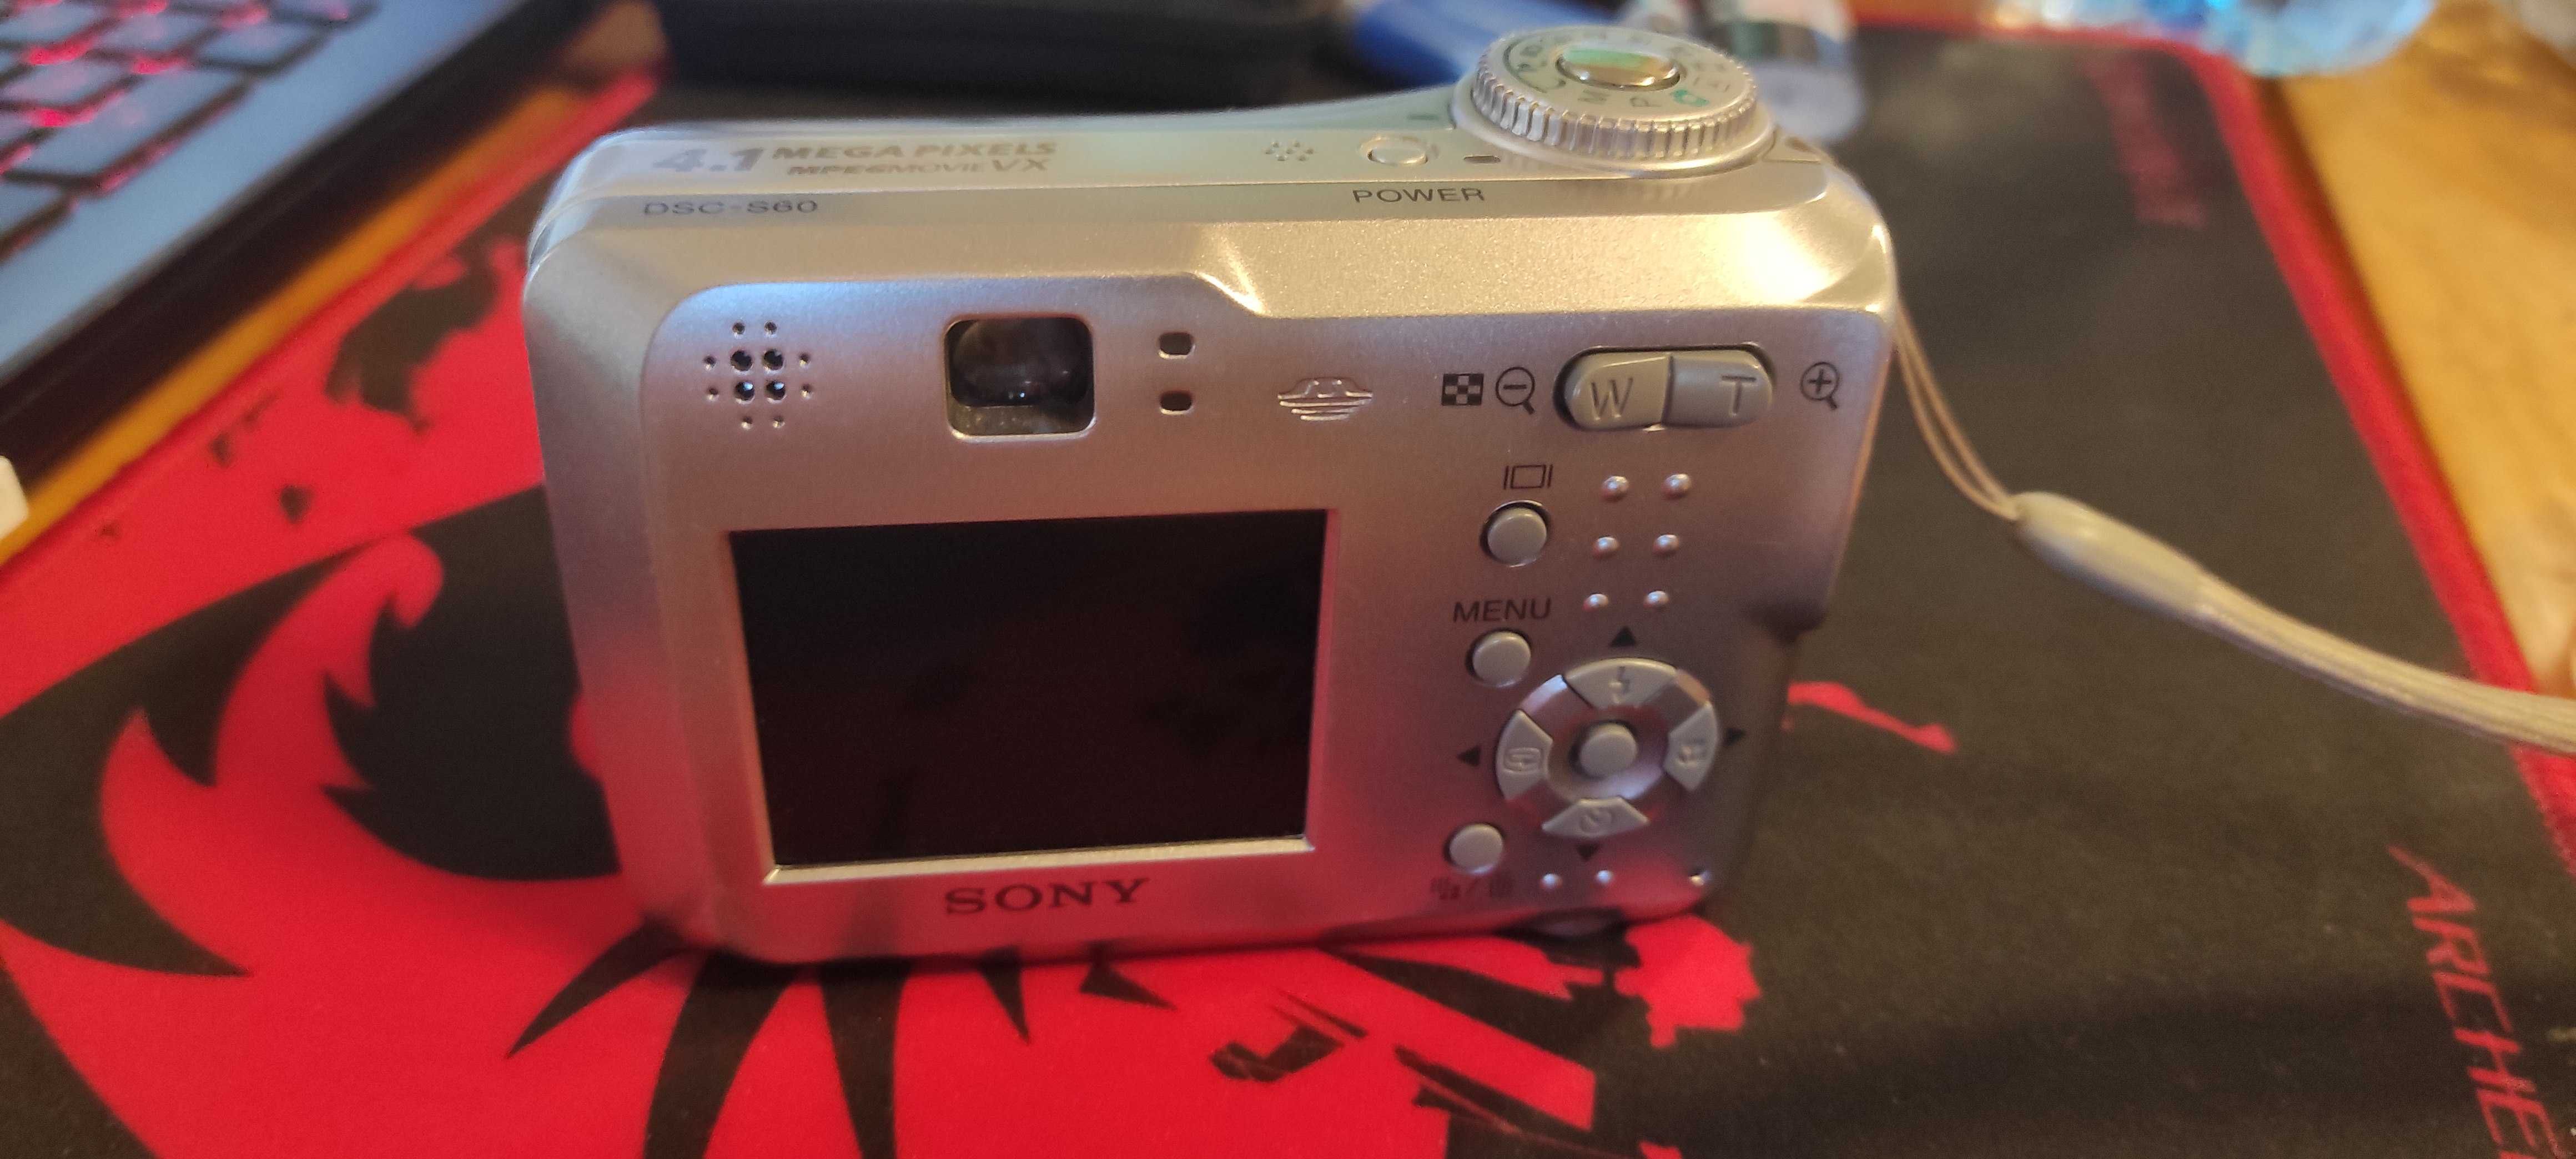 Sony Cyber-shot DSC-S60 4.1MP Digital Camera.